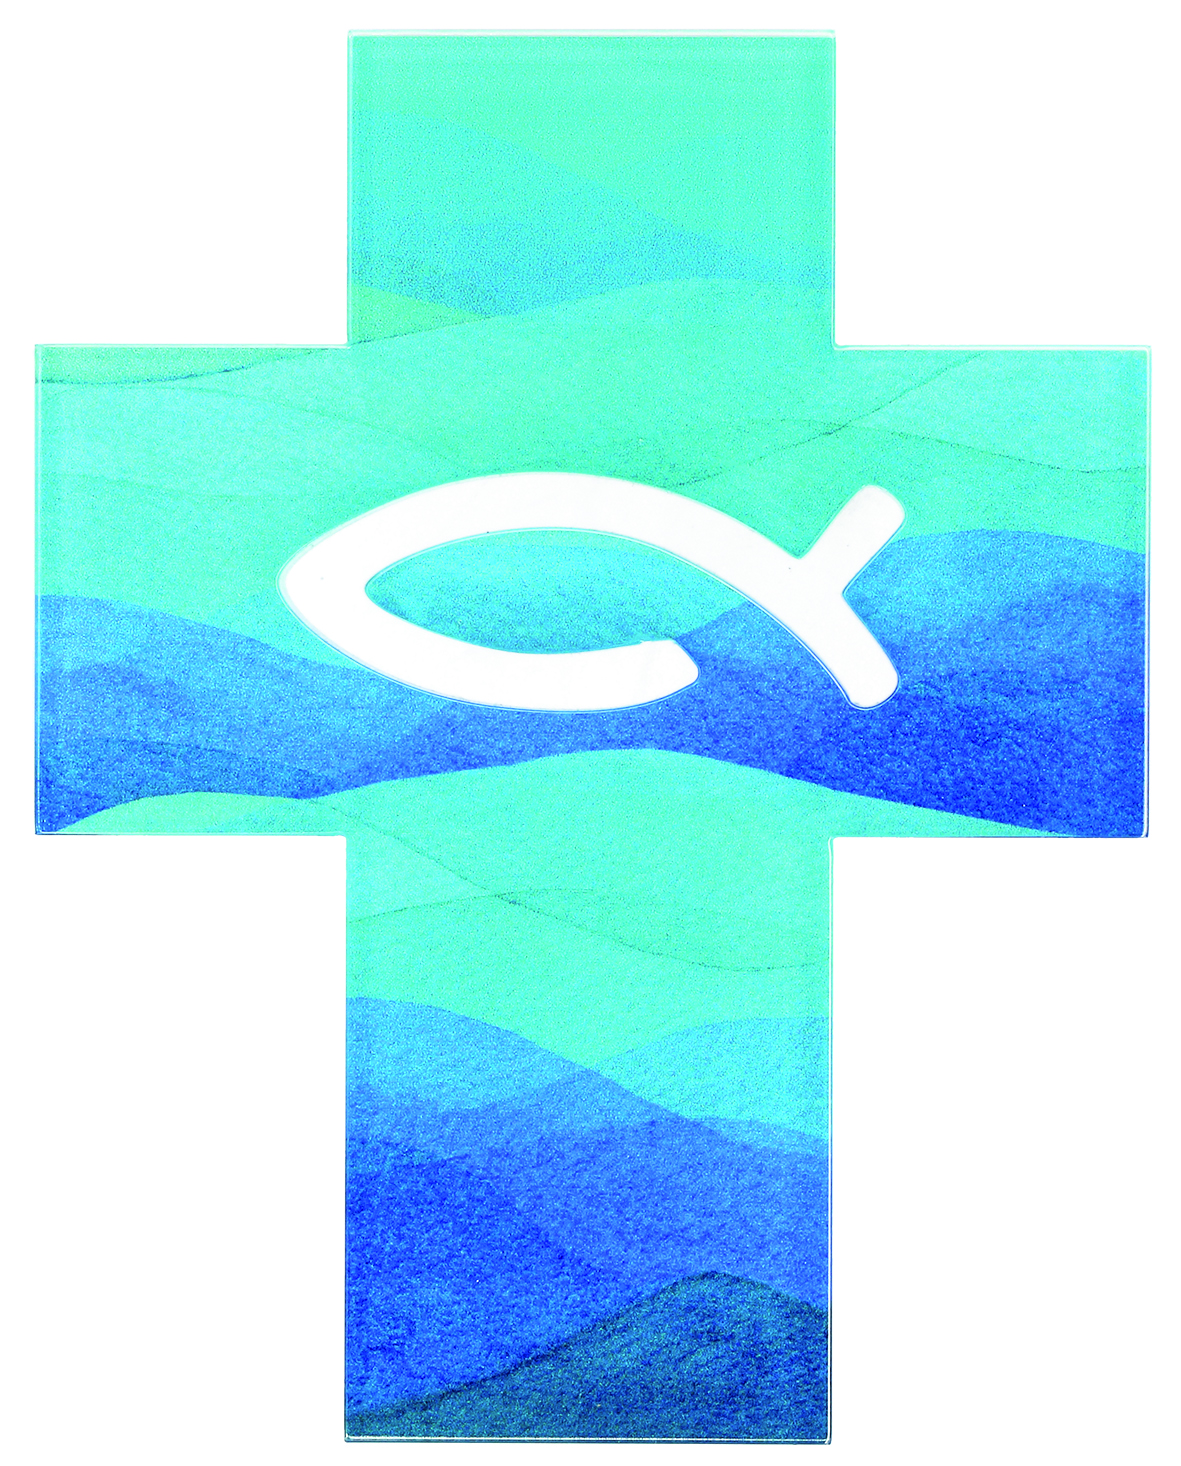 Acrylglas-Kreuz mit Fisch-Symbol durchbrochen